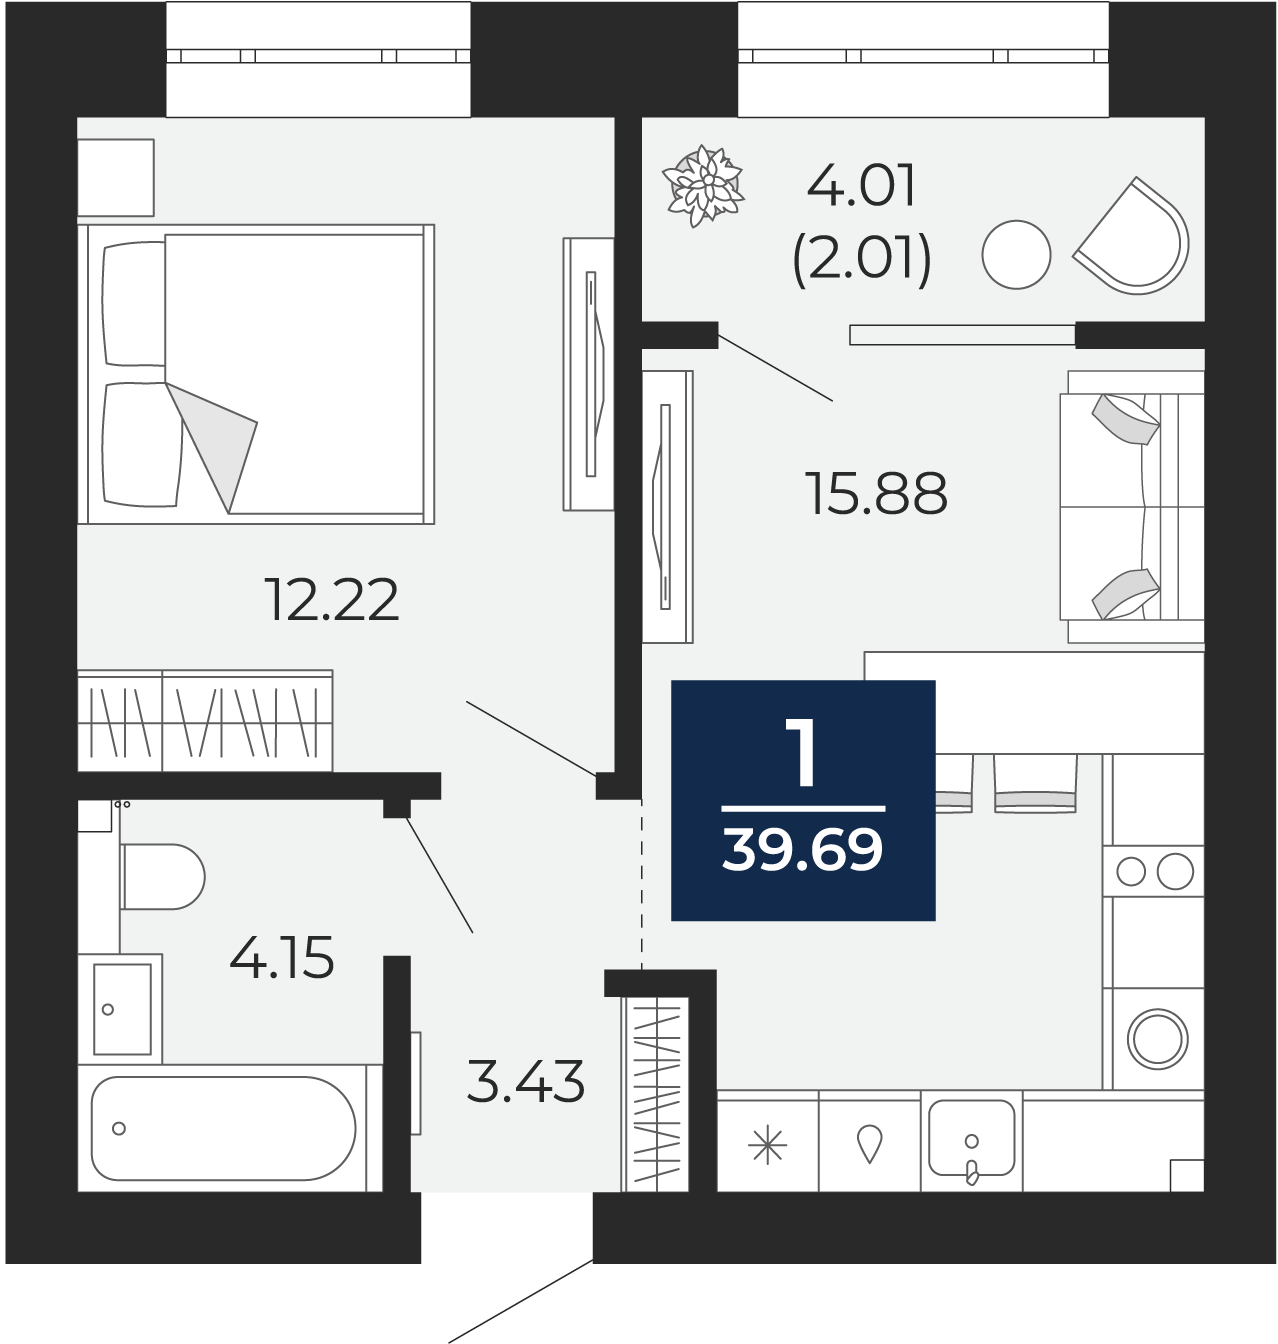 Квартира № 254, 1-комнатная, 39.69 кв. м, 10 этаж